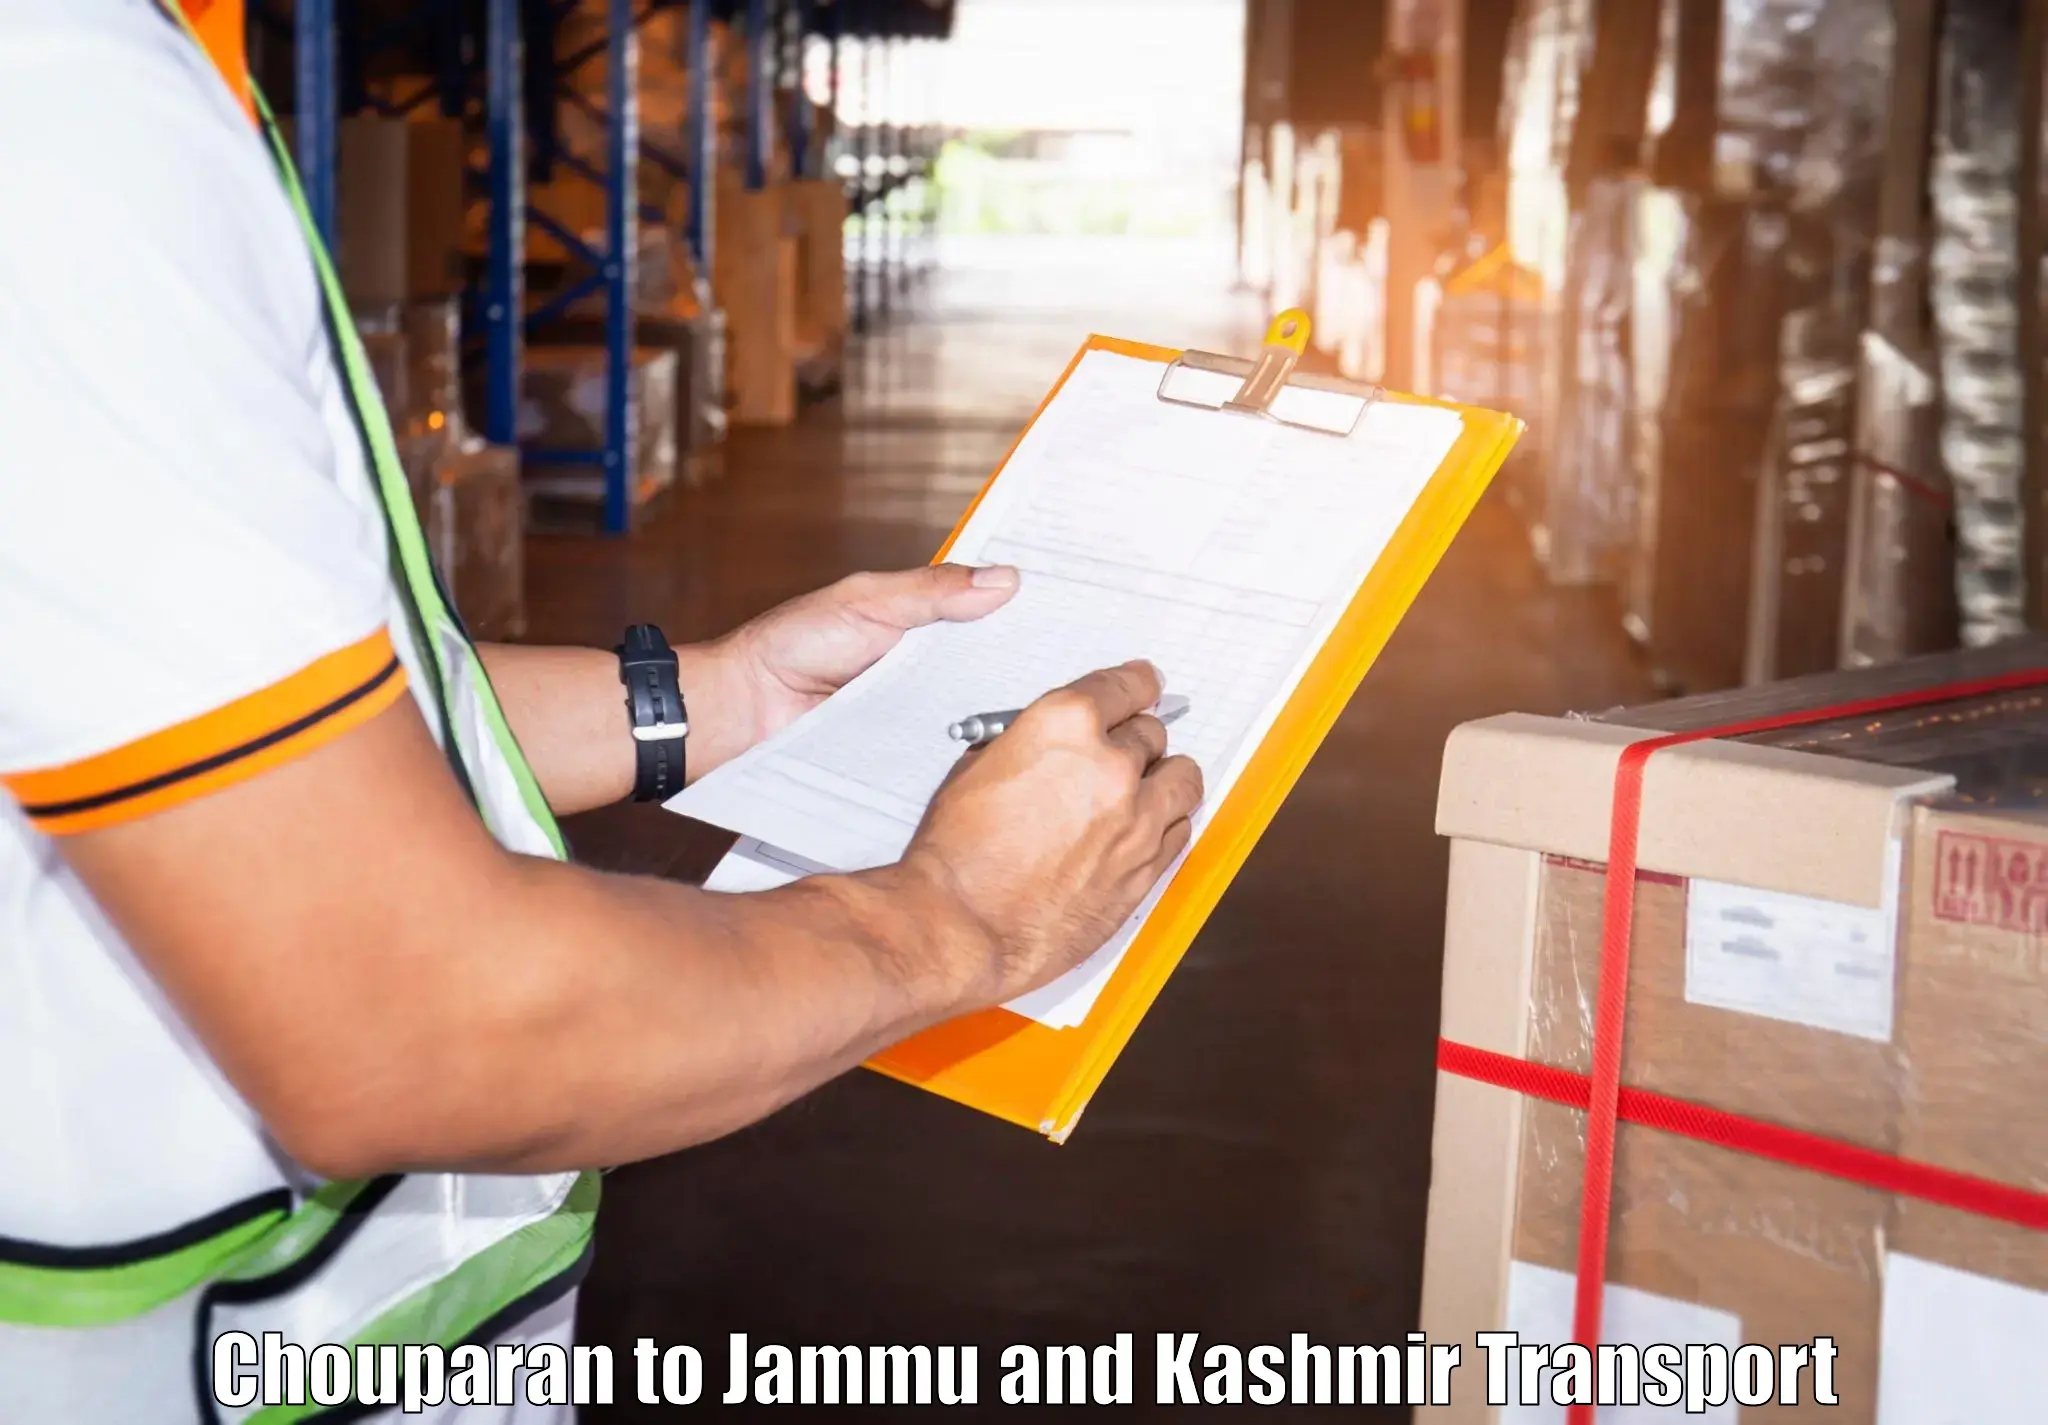 India truck logistics services Chouparan to Jammu